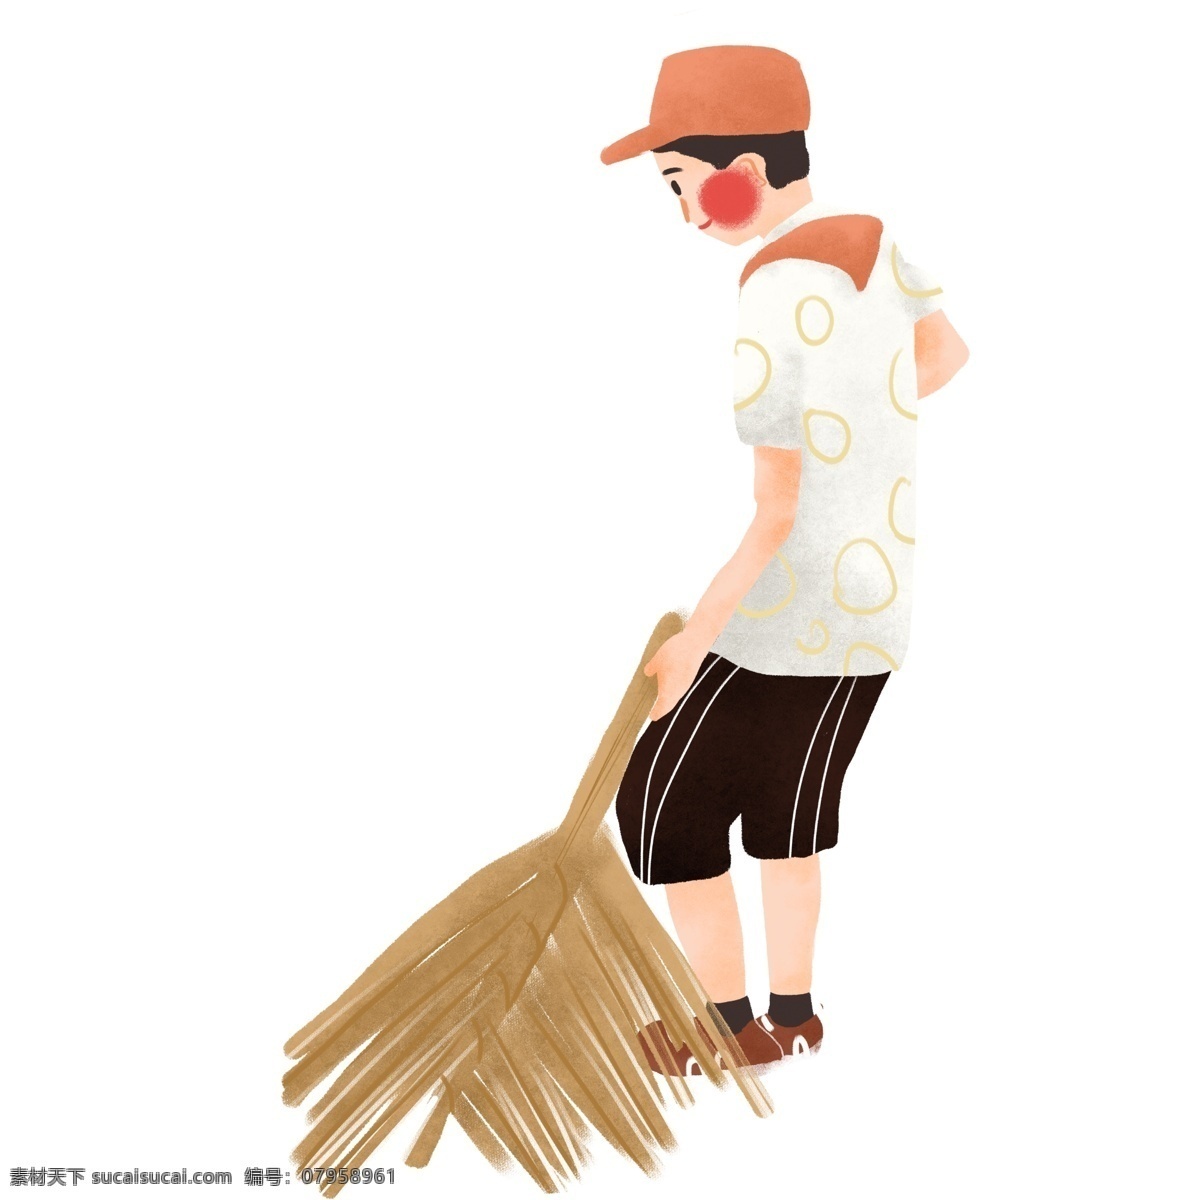 手绘 扫地 男 学生 插画 男孩 爱护环境 保护环境 扫帚 人物